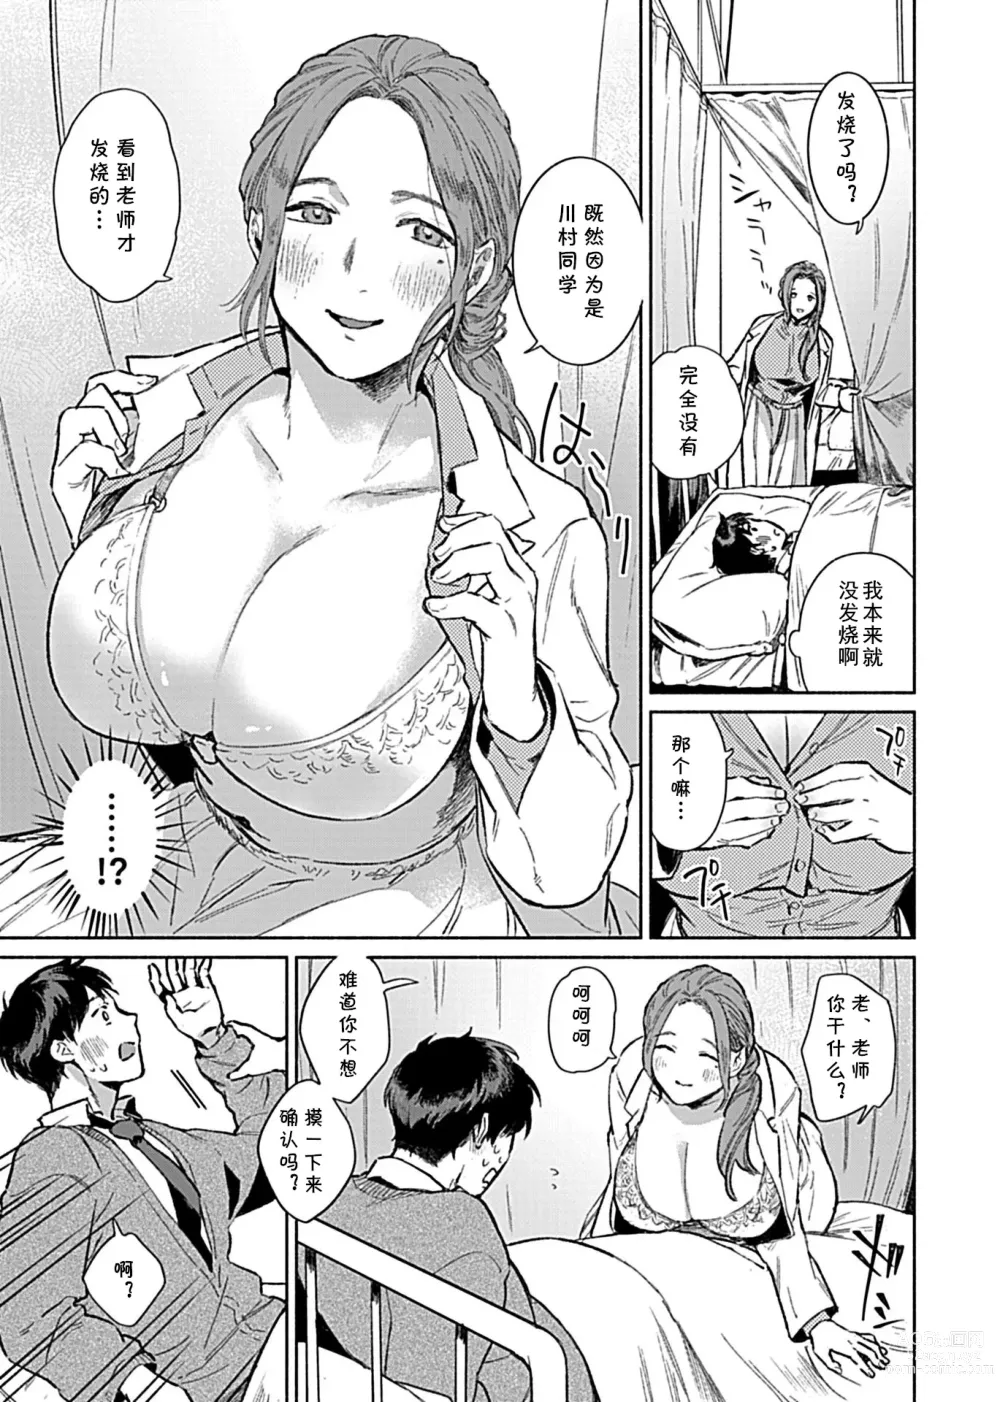 Page 6 of manga Minna no Shiranai Yuri Sensei no Himitsu